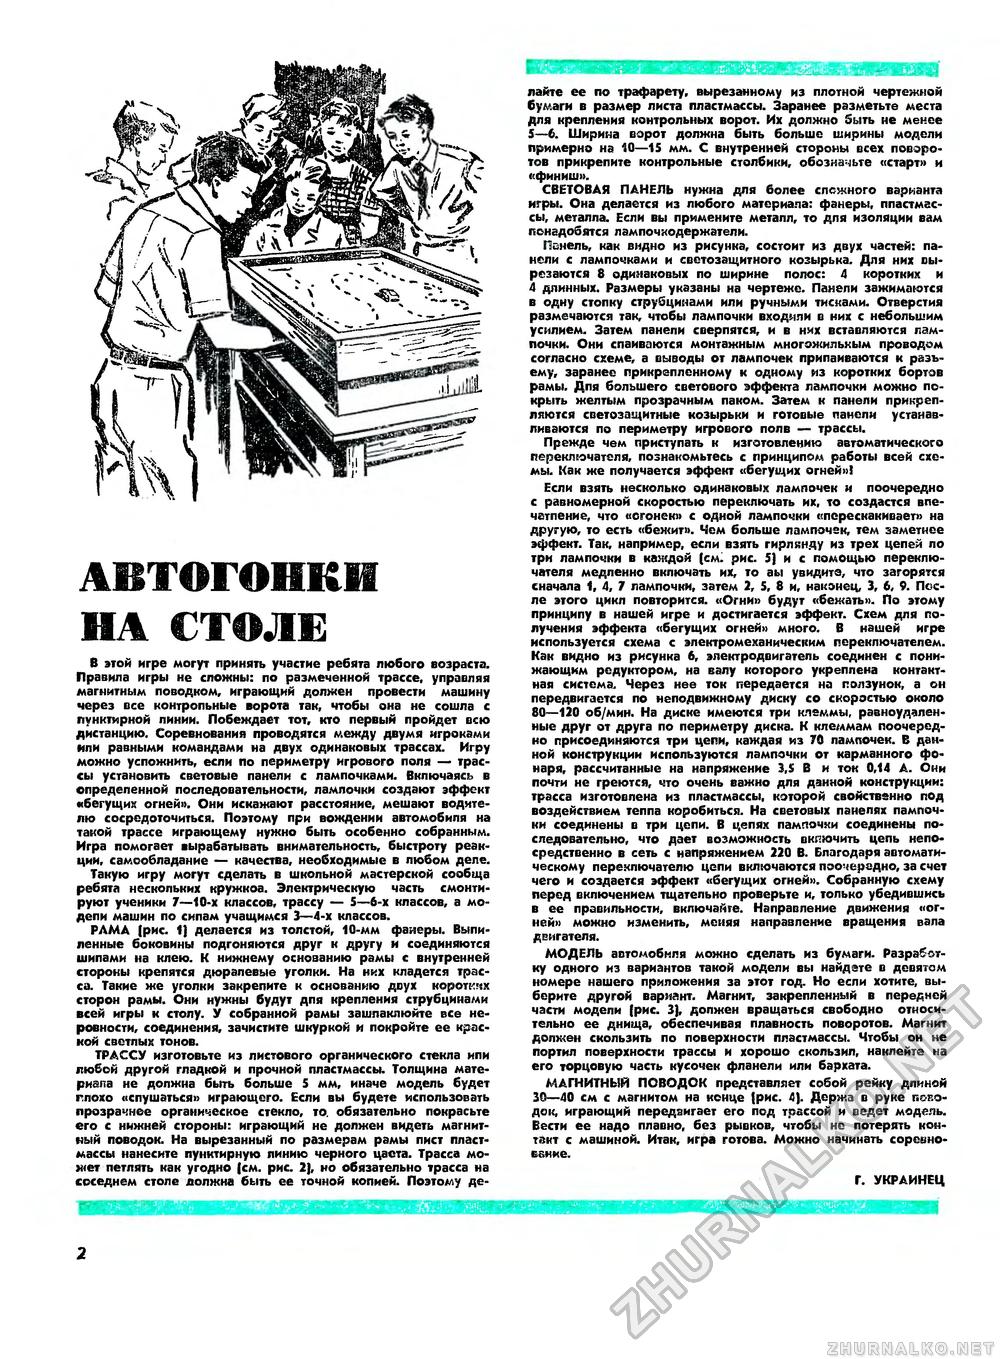 Юный техник - для умелых рук 1975-11, страница 2